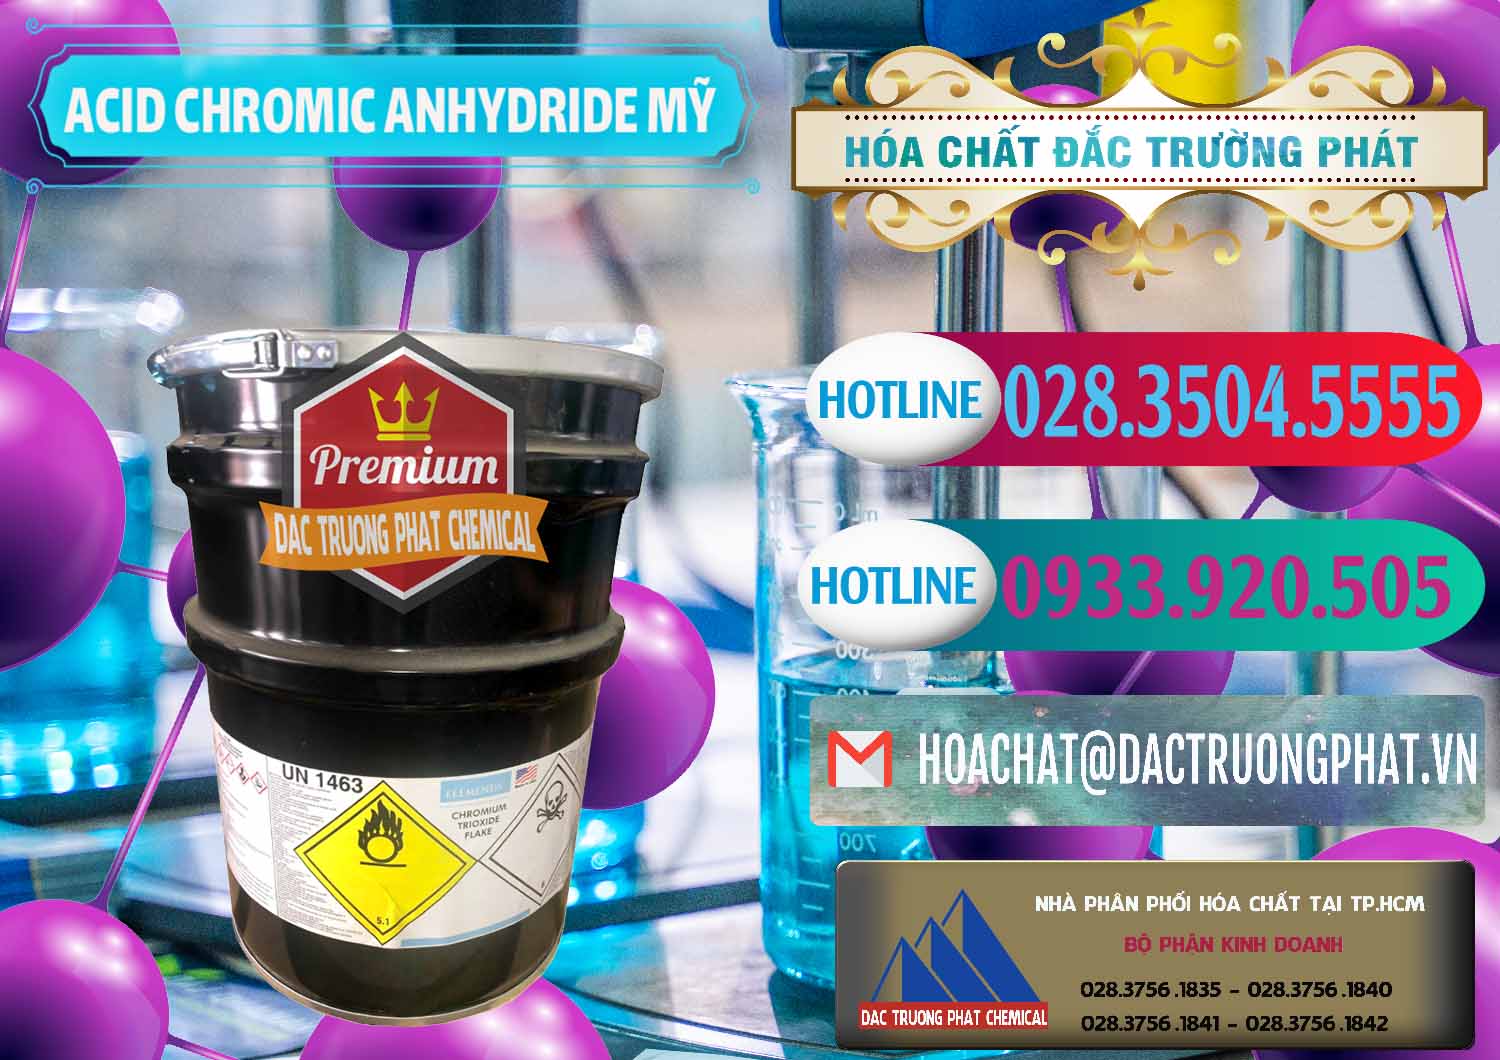 Đơn vị chuyên nhập khẩu - bán Acid Chromic Anhydride - Cromic CRO3 USA Mỹ - 0364 - Công ty chuyên nhập khẩu và cung cấp hóa chất tại TP.HCM - truongphat.vn